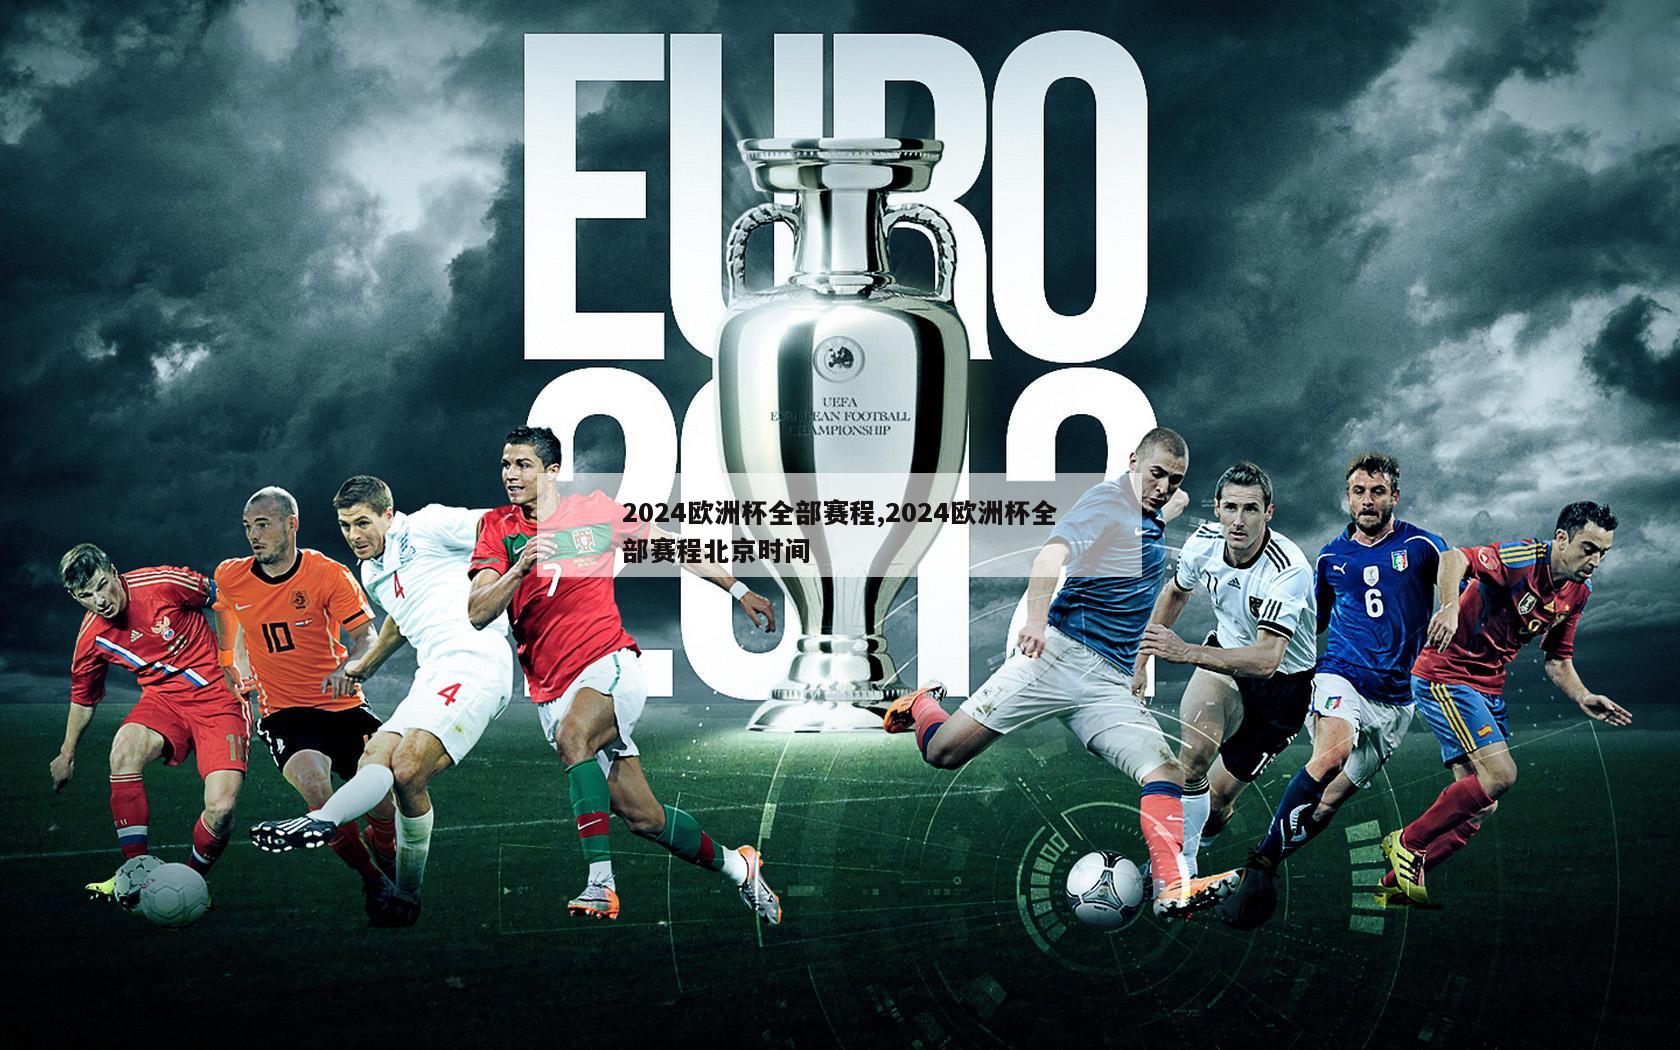 2024欧洲杯全部赛程,2024欧洲杯全部赛程北京时间